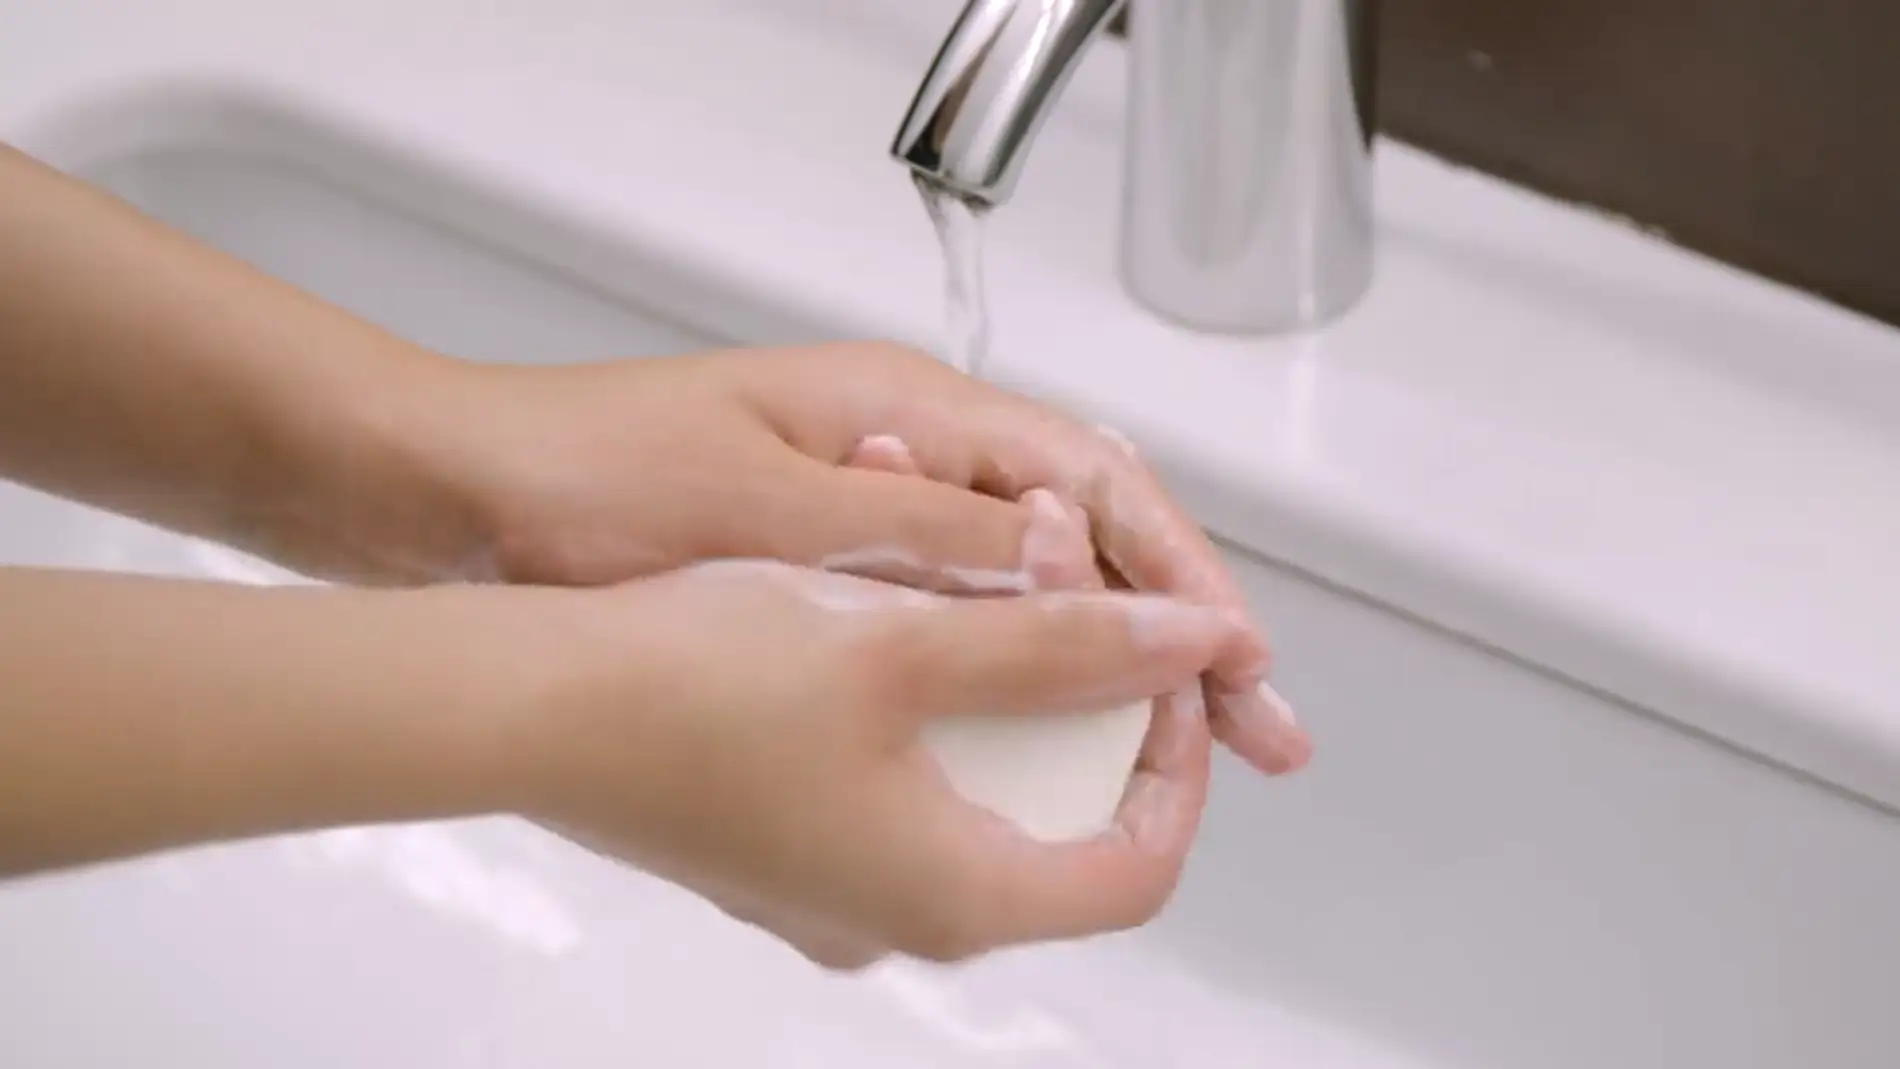 Jabón o gel desinfectante: ¿qué es mejor para lavarse las manos?